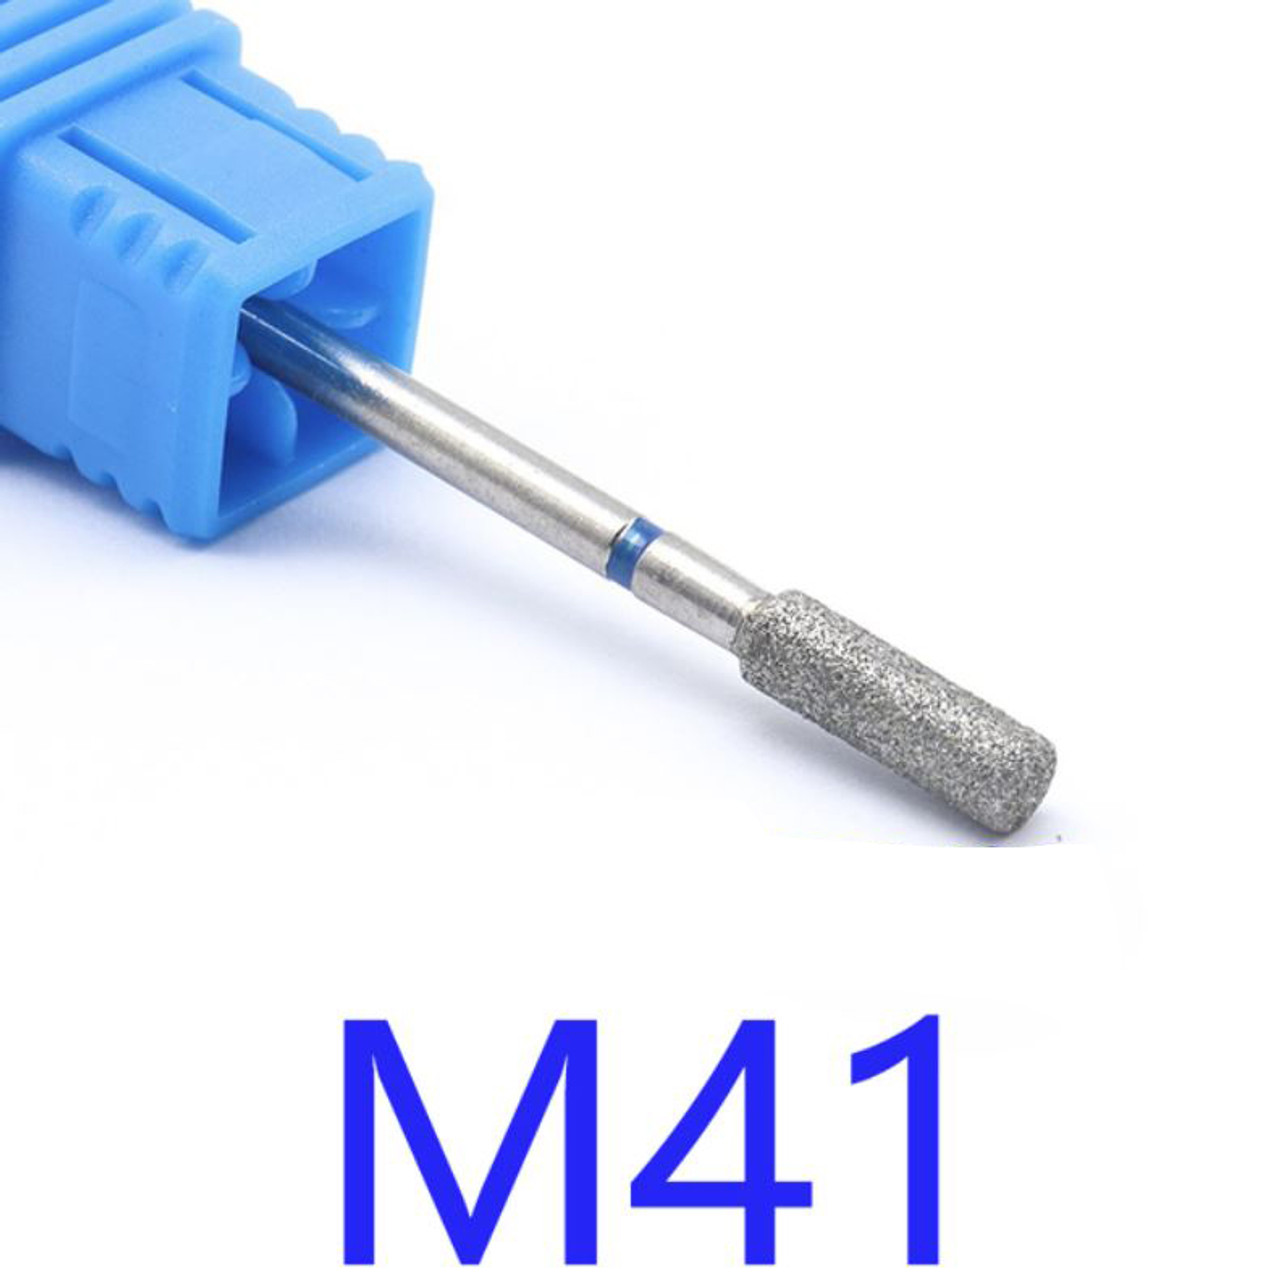 NDi beauty Diamond Drill Bit - 3/32 shank (MEDIUM) - M41